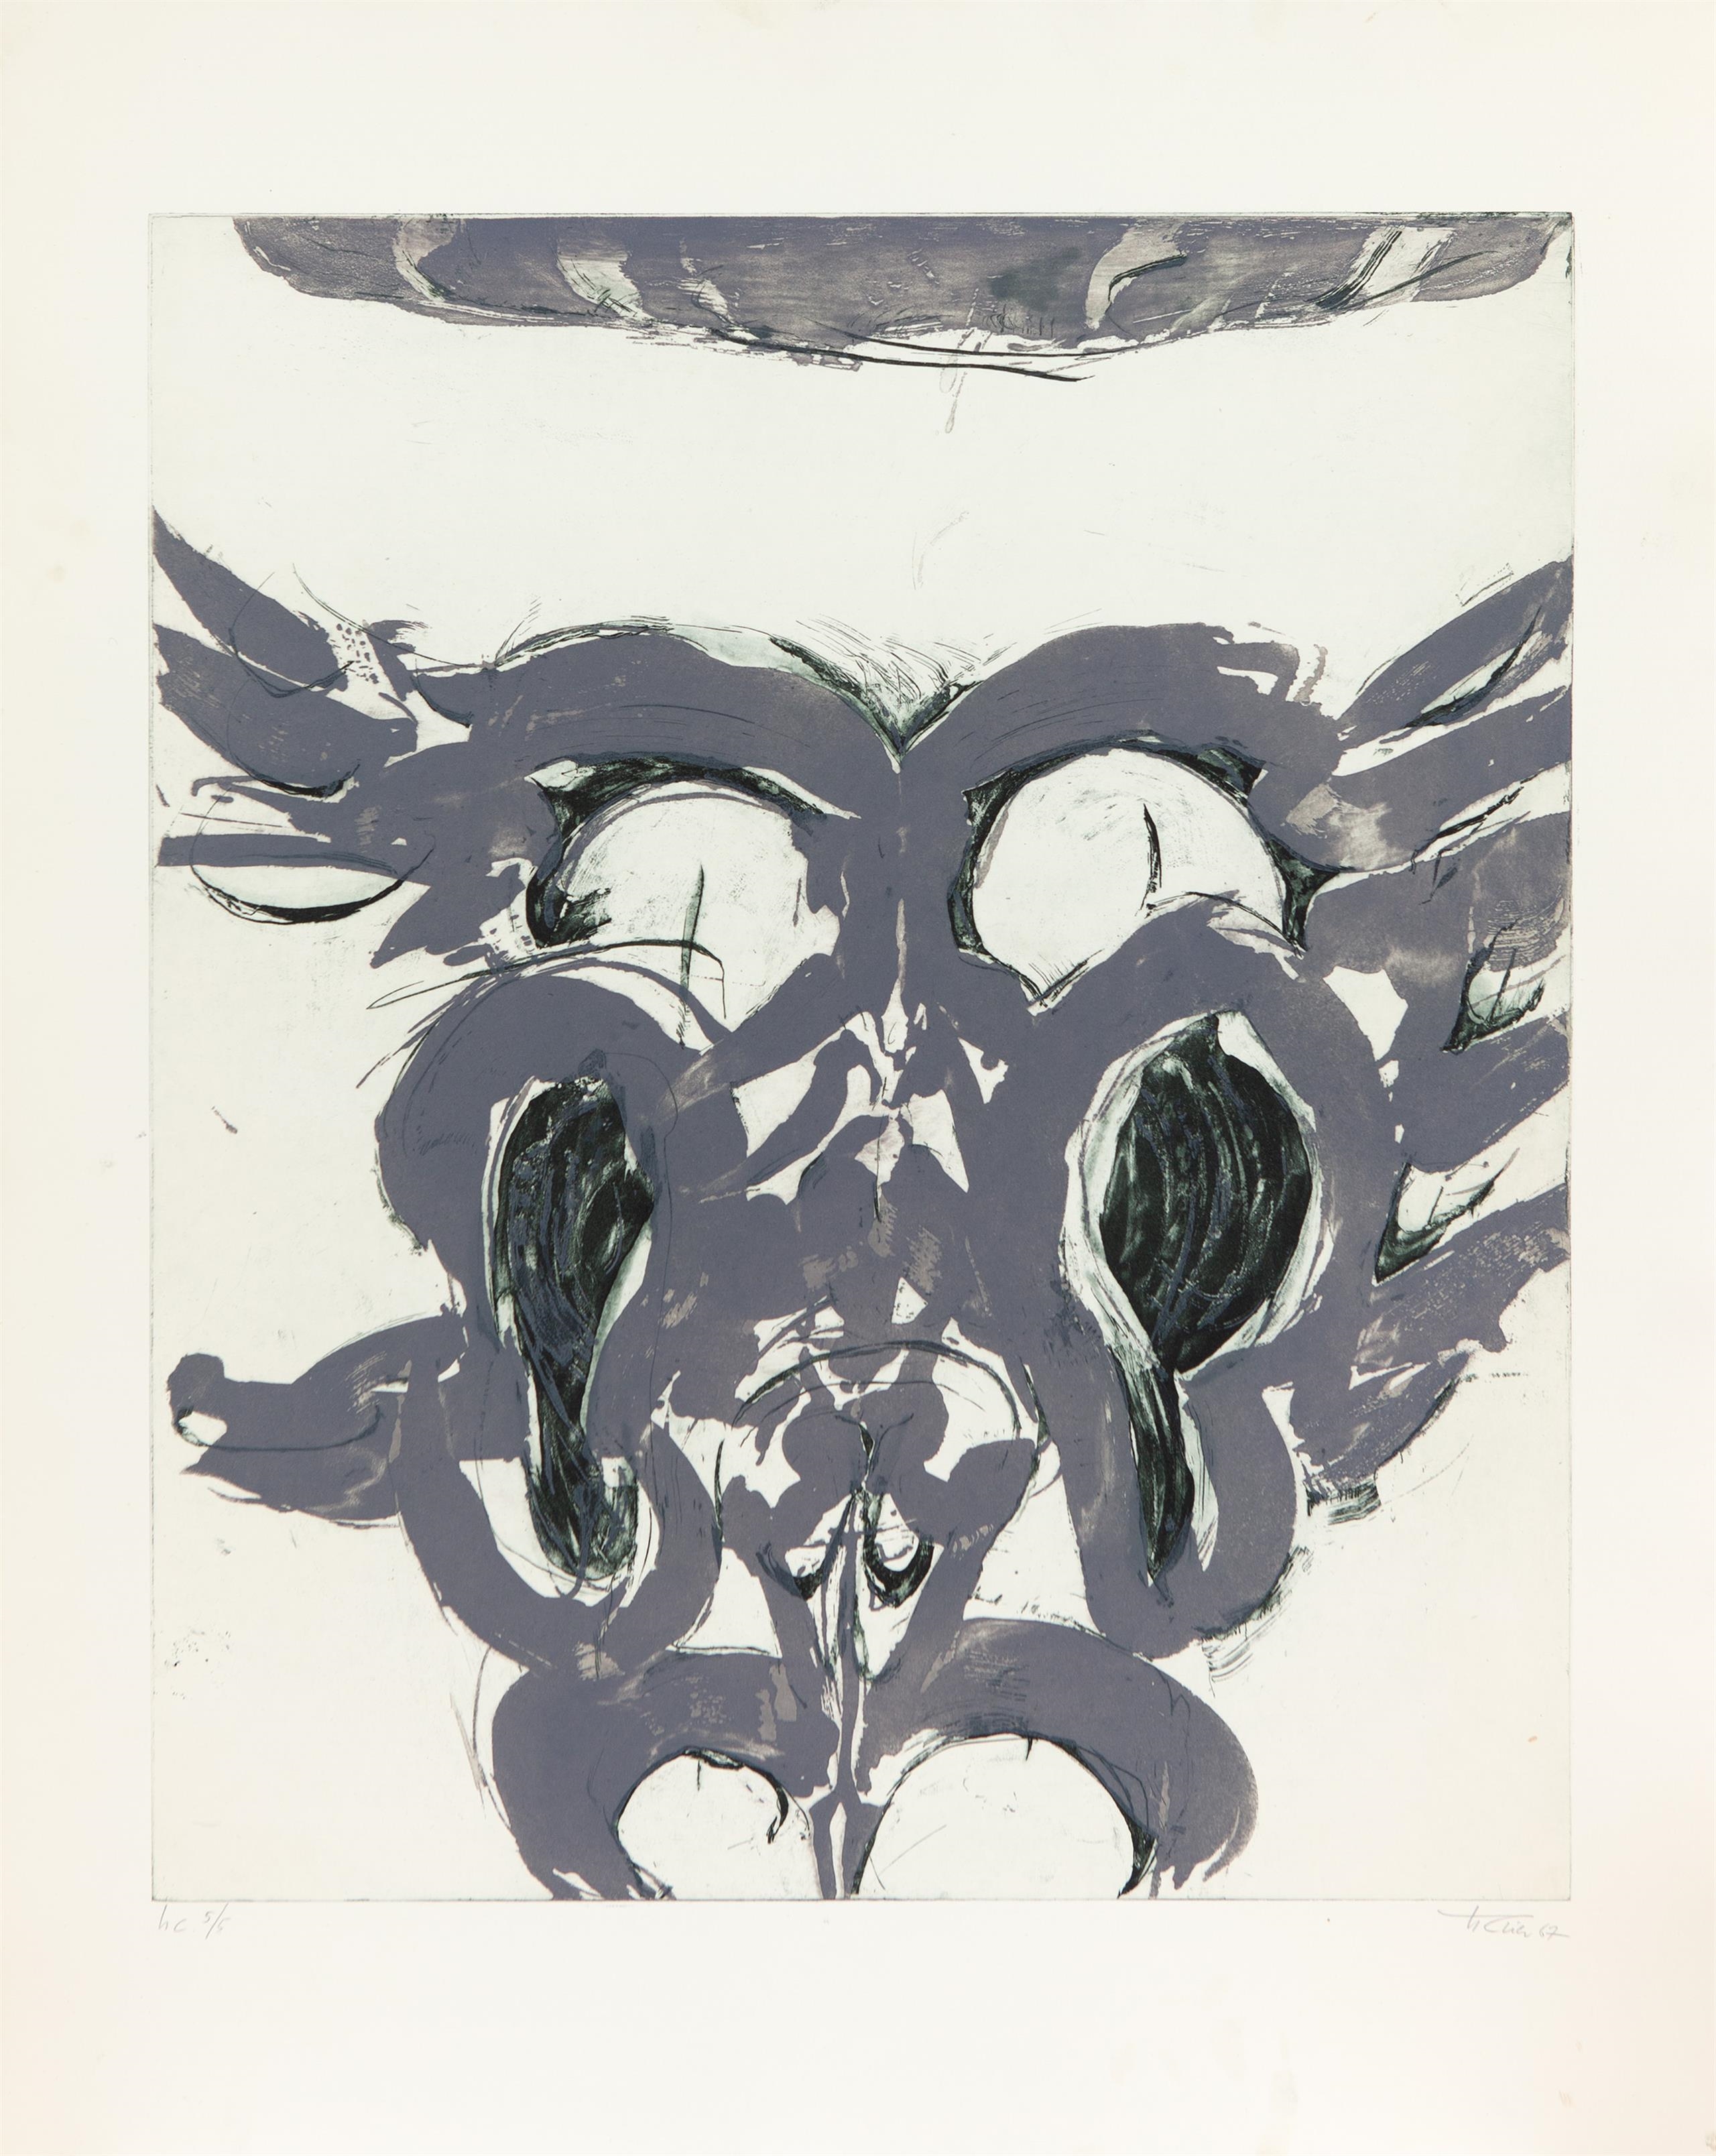 Merops. Eine antike Fabel mitgeteilt von Gotthold Ephraim Lessing. 1967 by Hann Trier, 1967